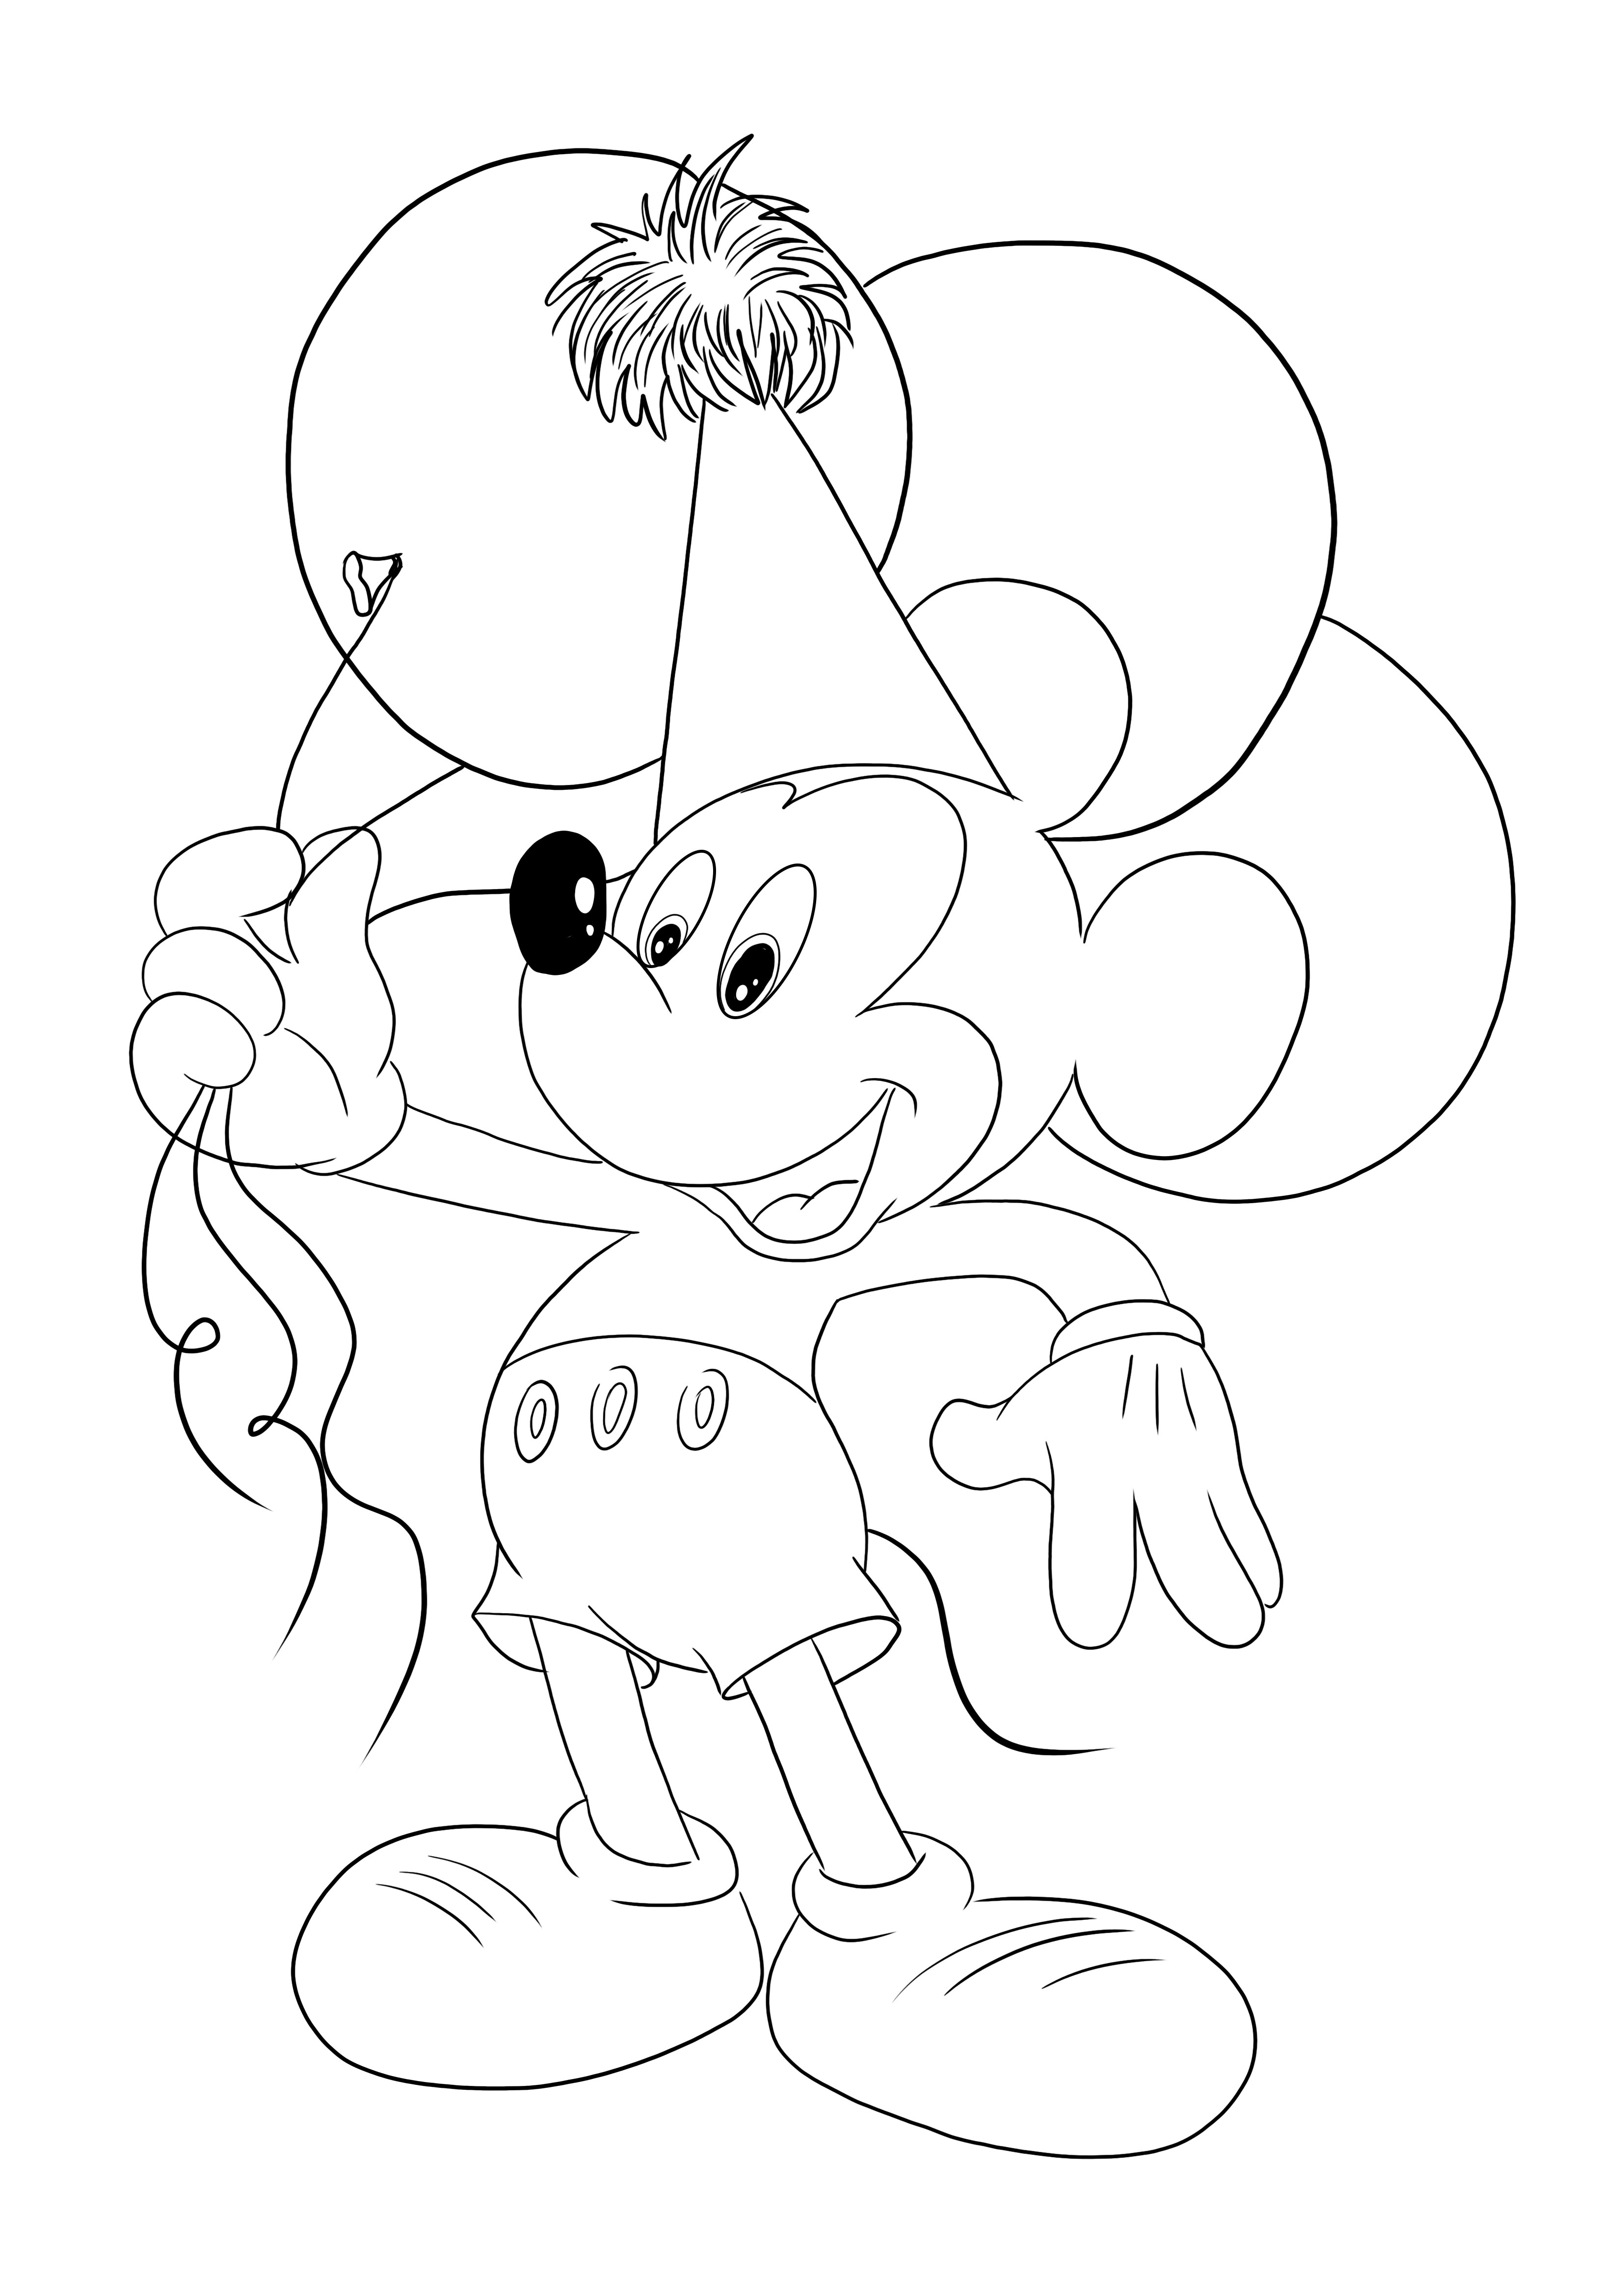 Mickey Mouse con Globos imprimibles gratis para que los niños coloreen fácilmente